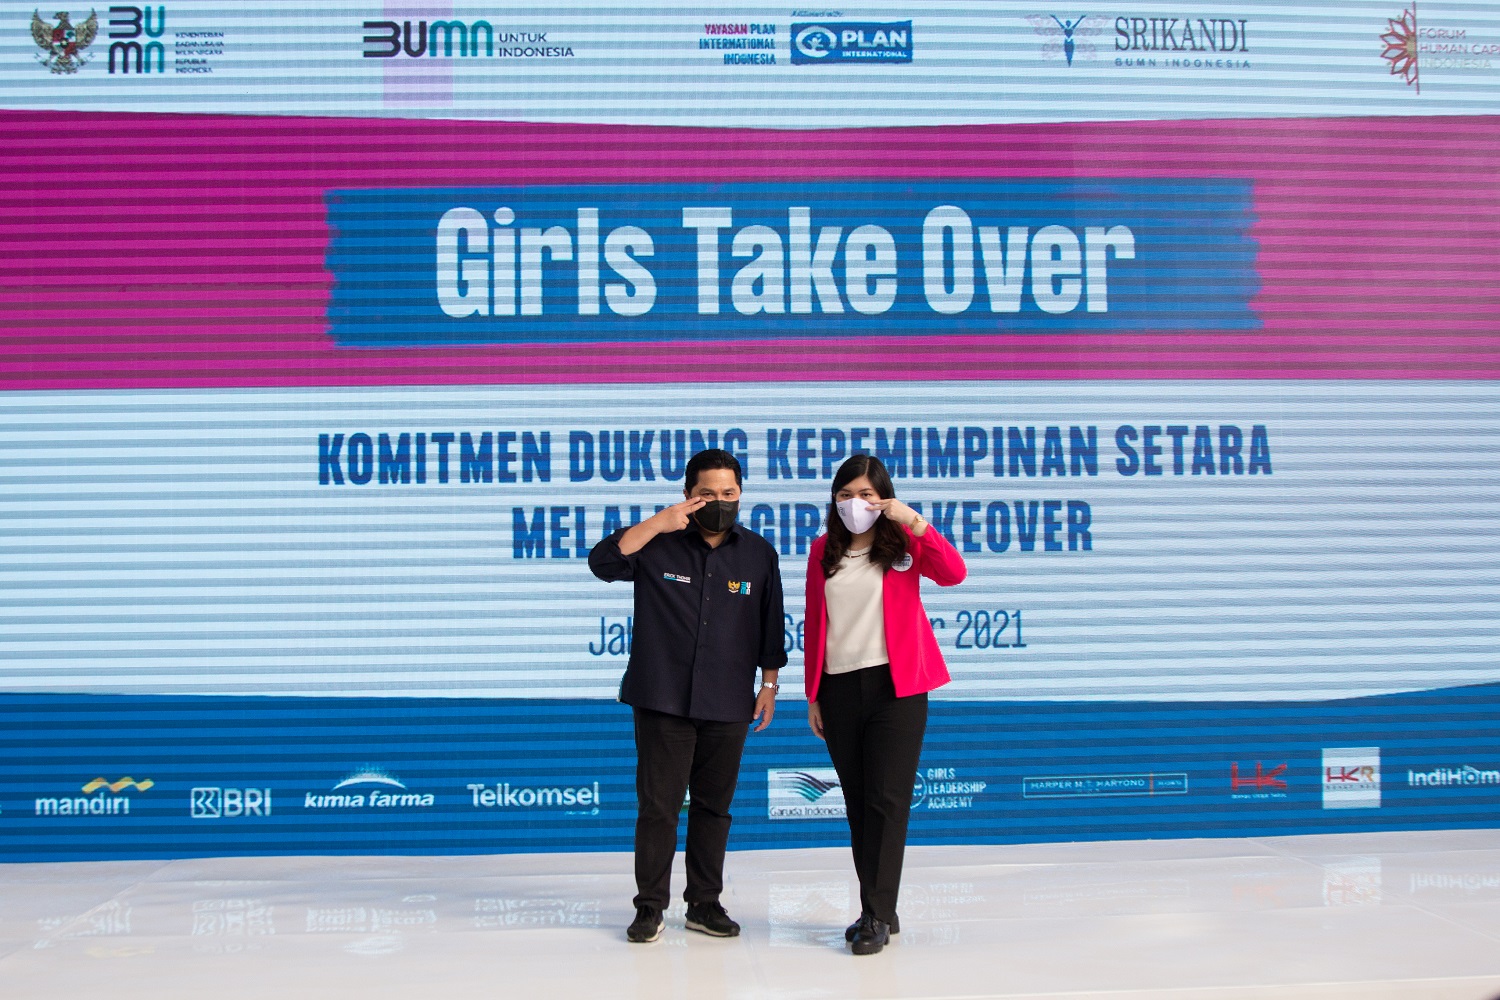 #GirlsTakeOver, Mencatat Pengalaman Pemimpin Perempuan di BUMN